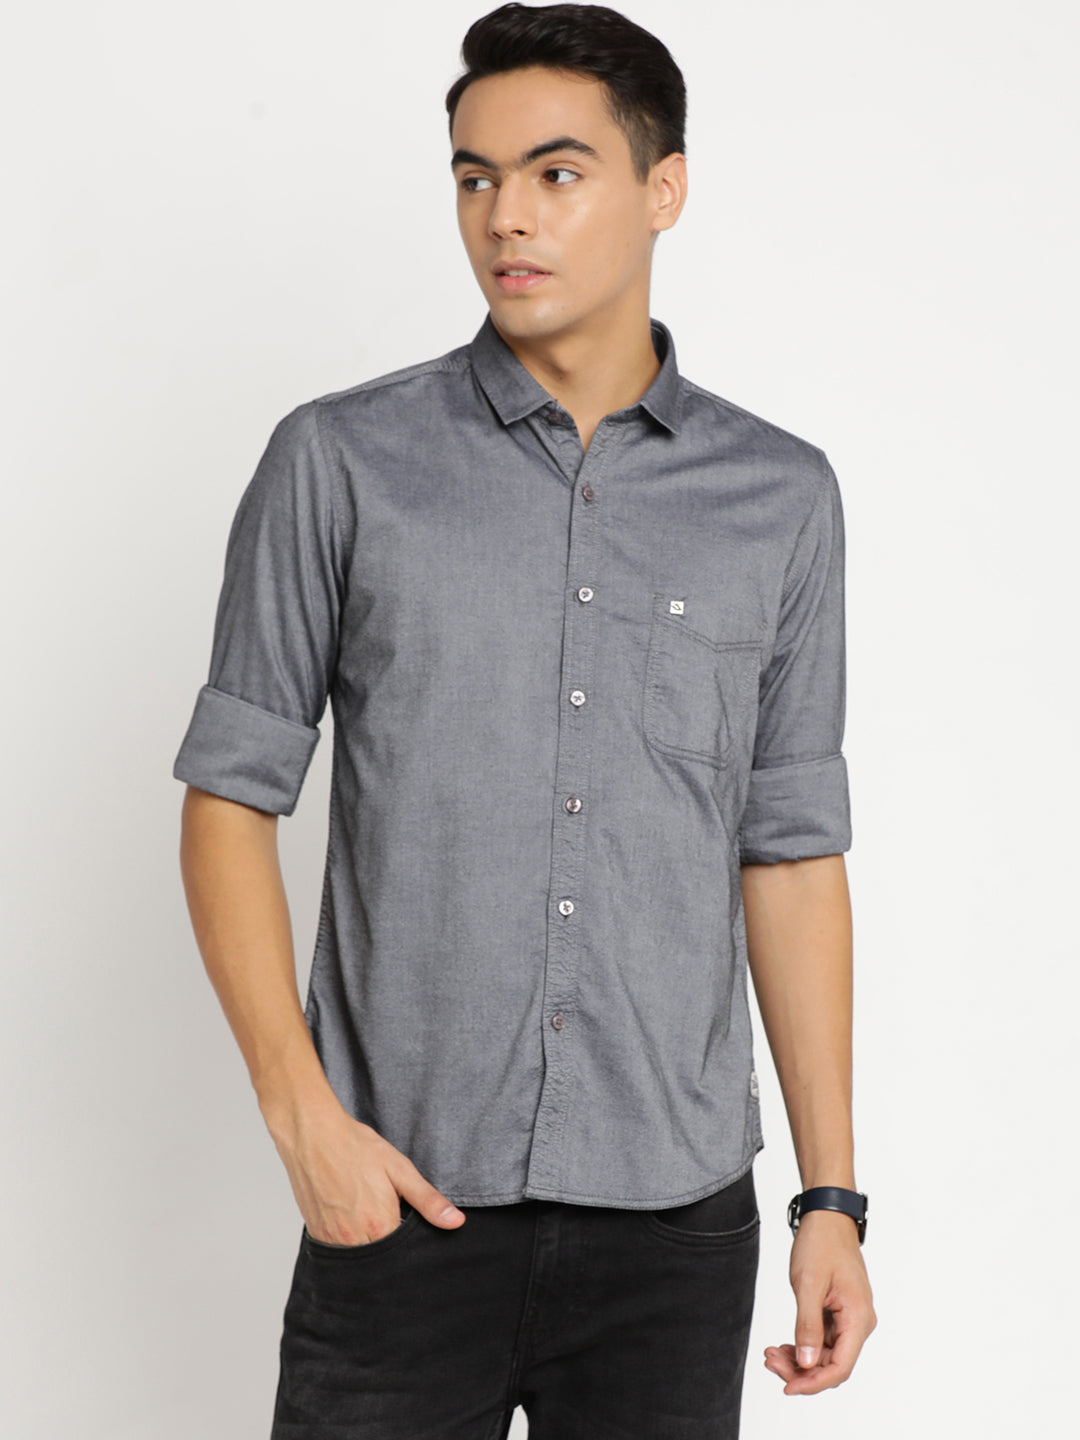 DK Grey Plain Shirt